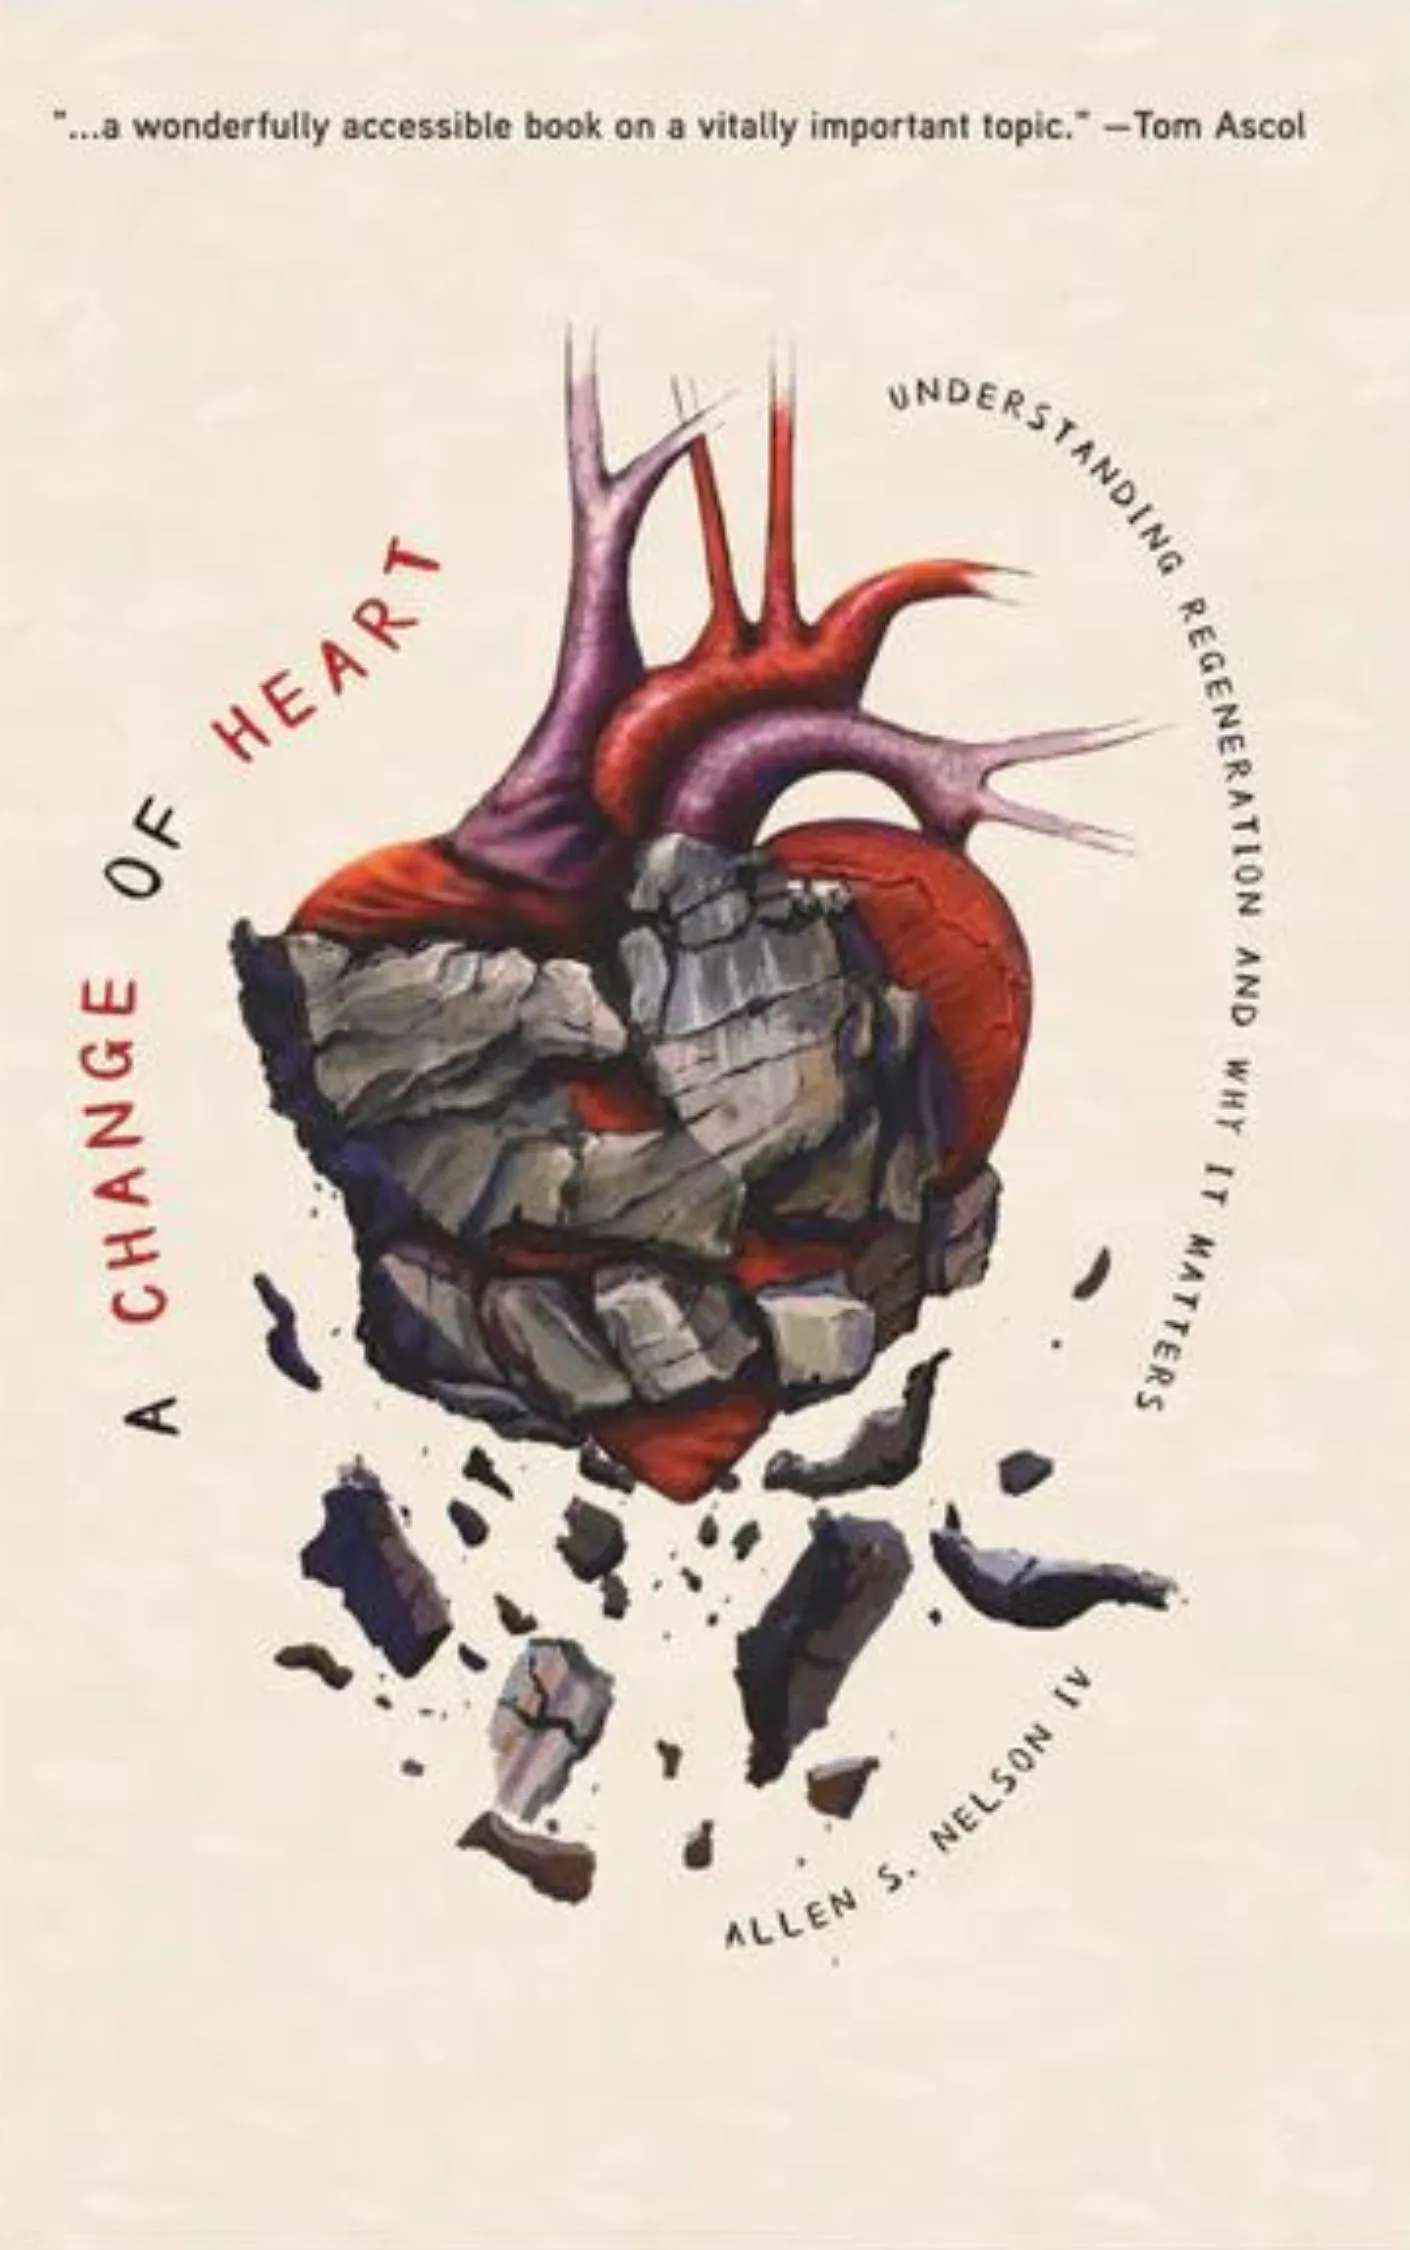 A Change of Heart by Allen S. Nelson